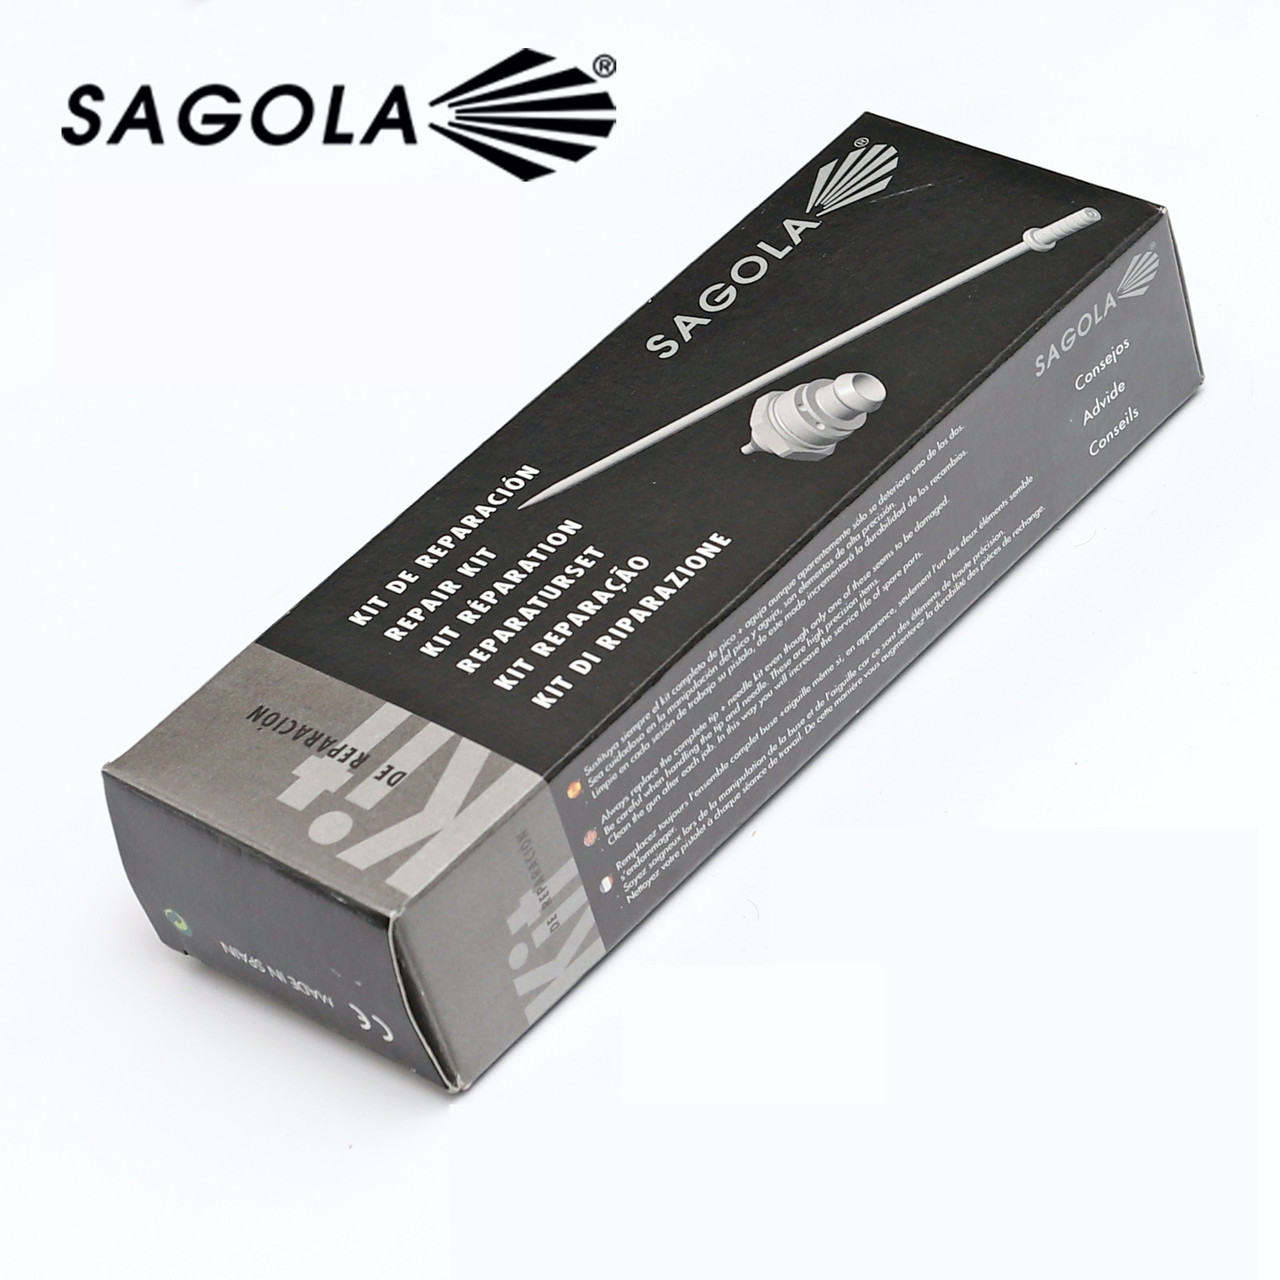  краскопульта Sagola 3300 | Купить, цена, отзывы.